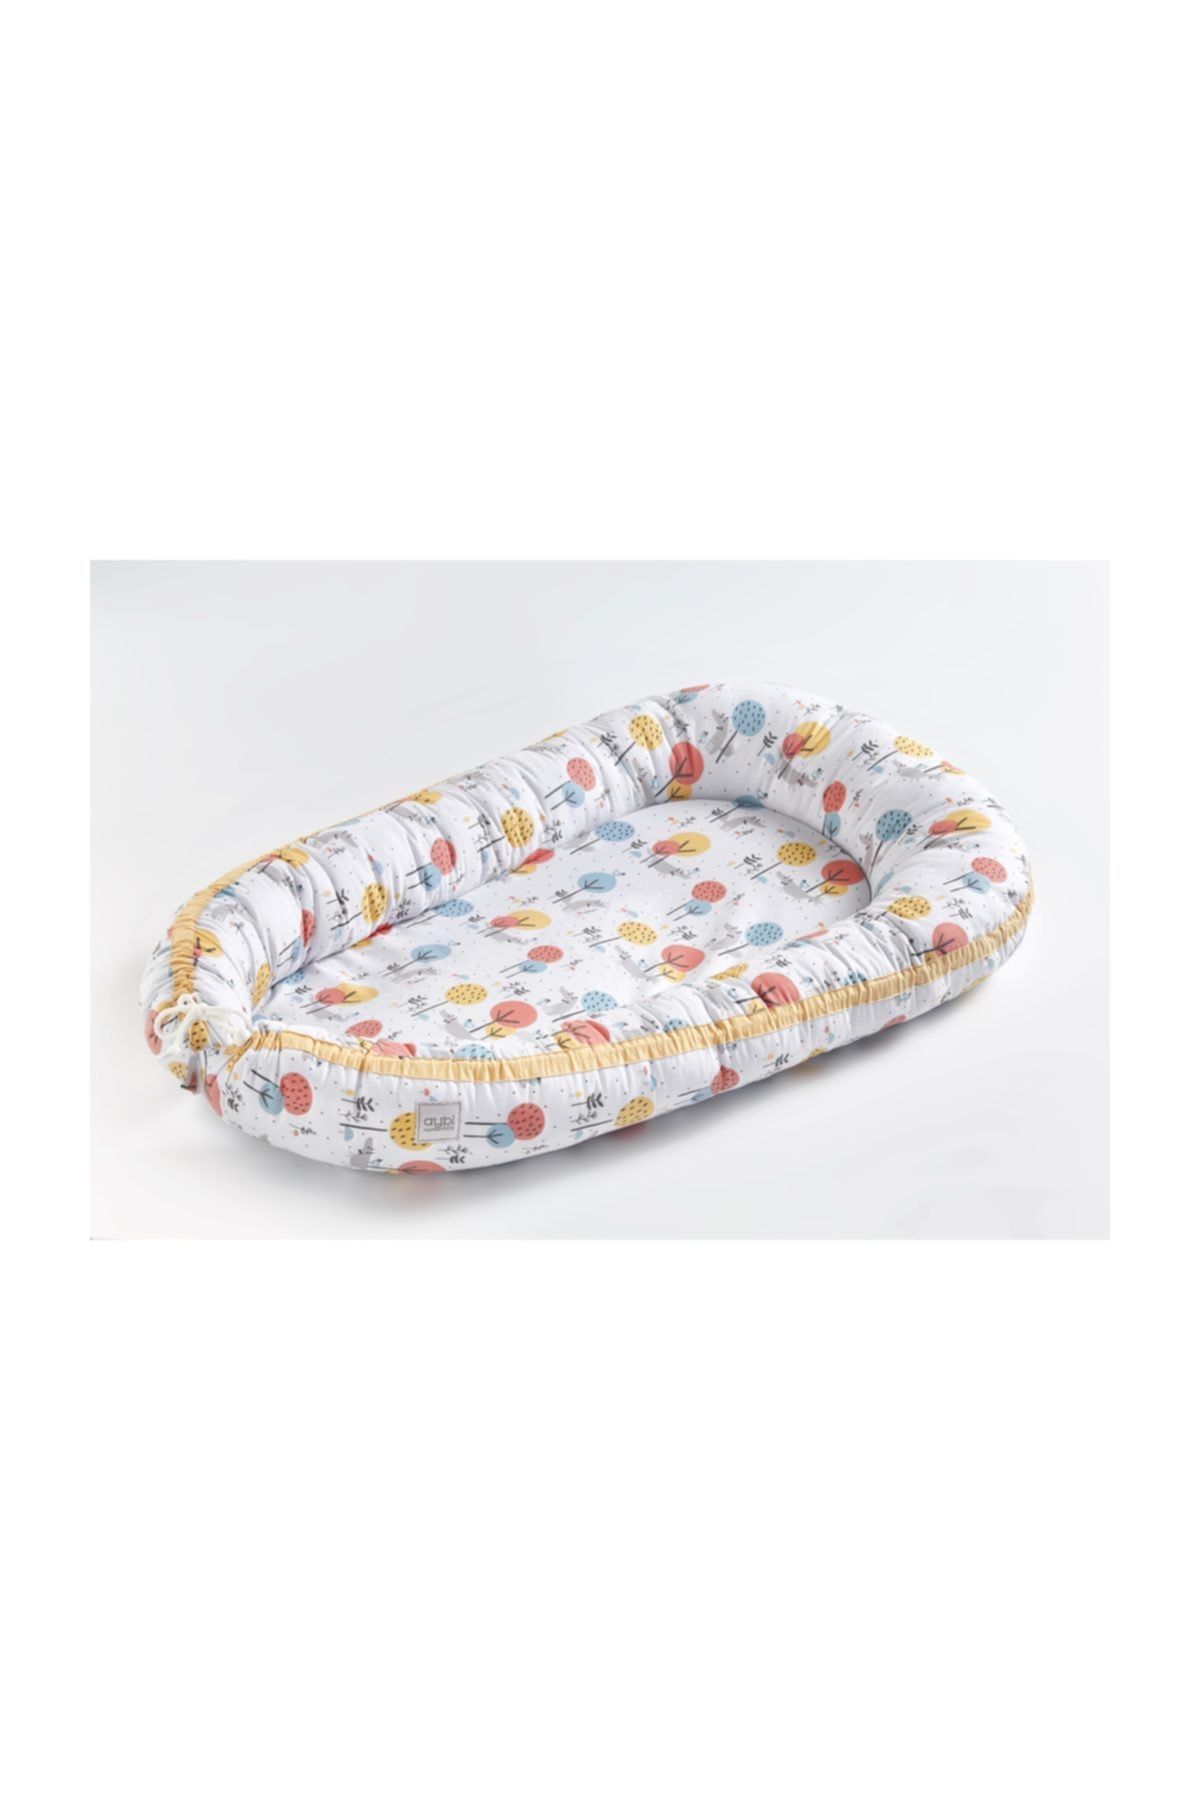 Aybi Baby Baby Nest - Kundak Bebek Yatağı